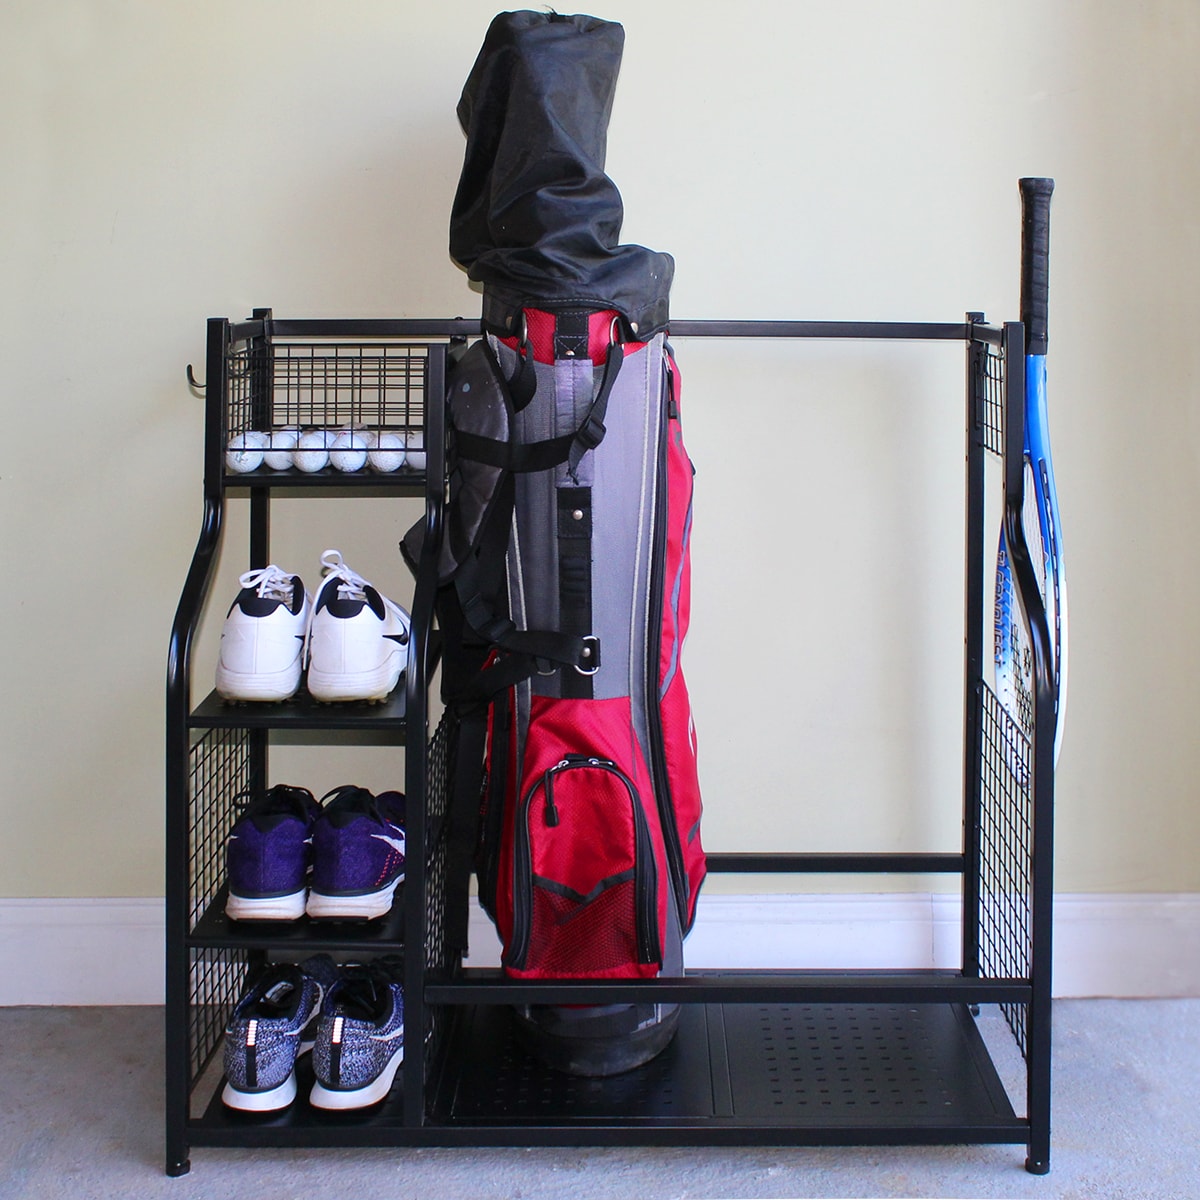 Mythinglogic 3 Bag Golf Organizer, golf organizer for garage